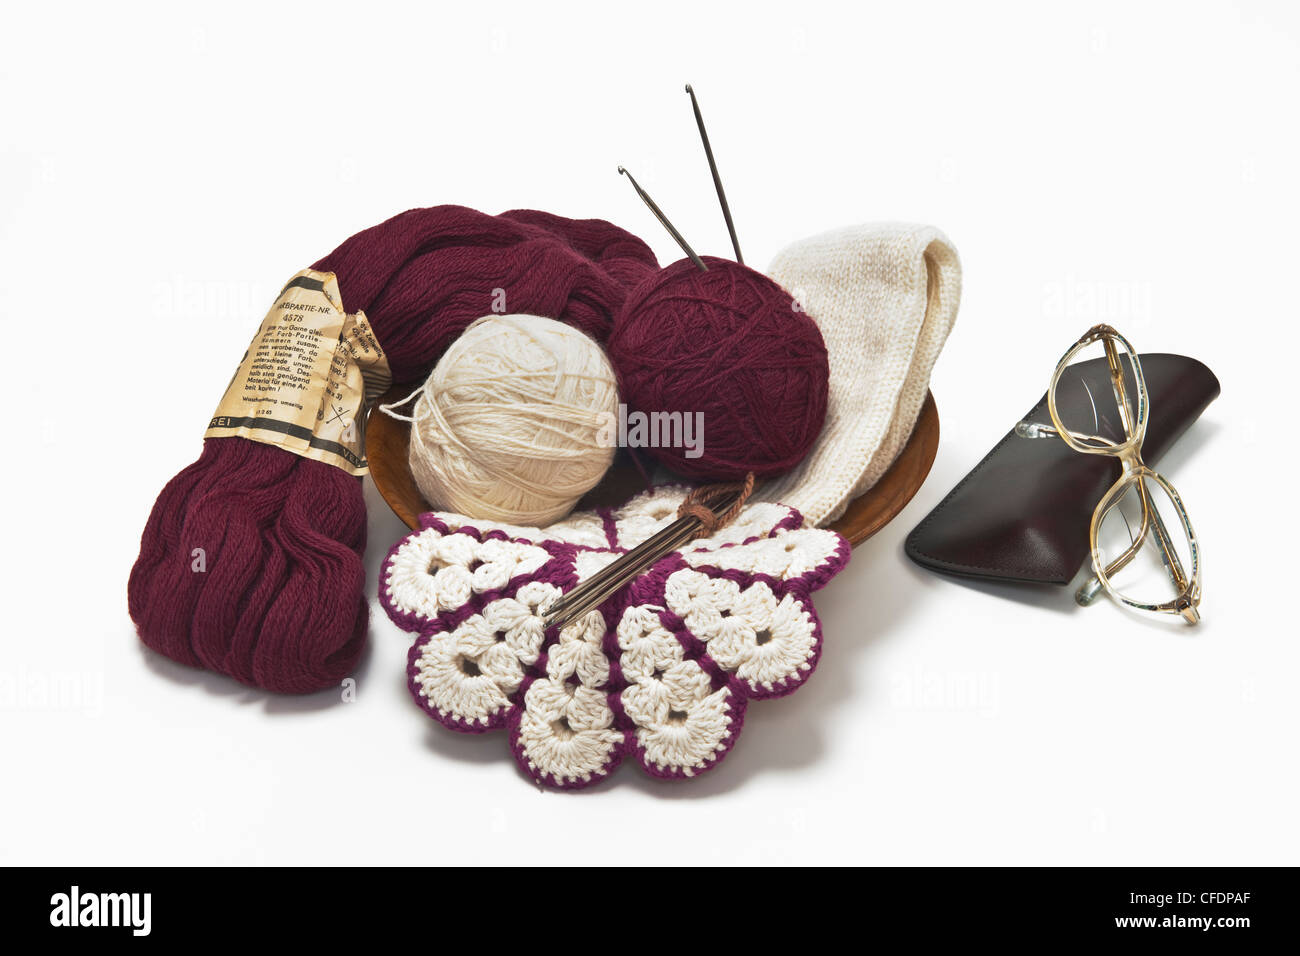 La lana di differenti, un potholder, aghi da maglia e i bicchieri sono vicine le une alle altre Foto Stock